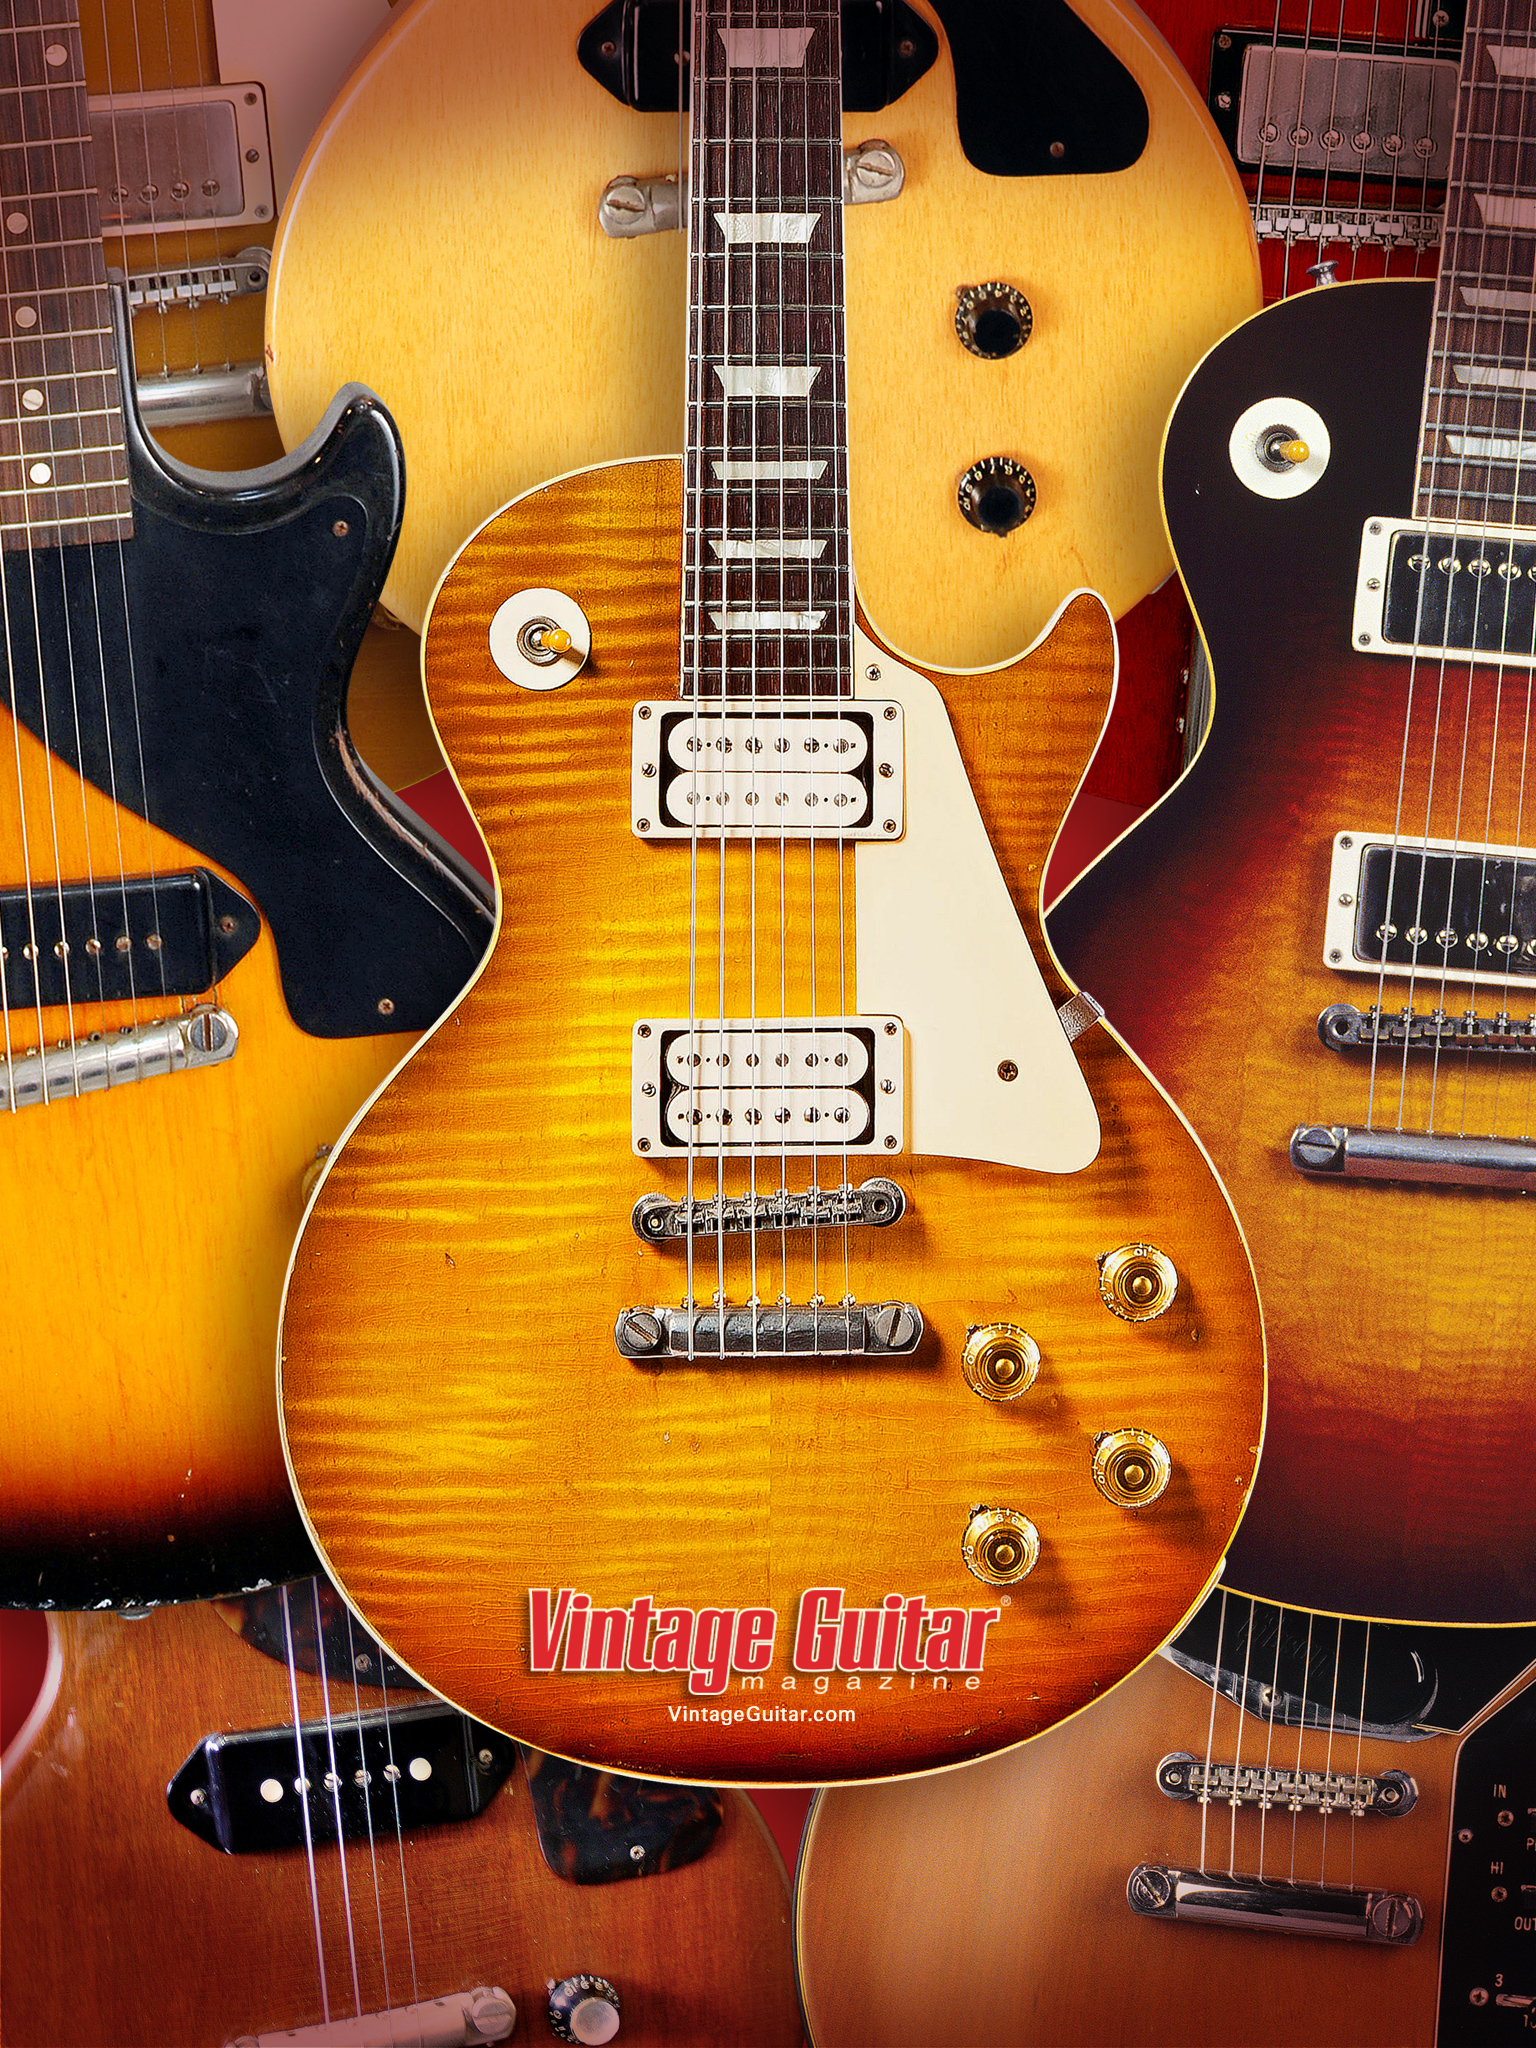 Gibson Guitar Wallpaper Iphone 6 - HD Wallpaper 